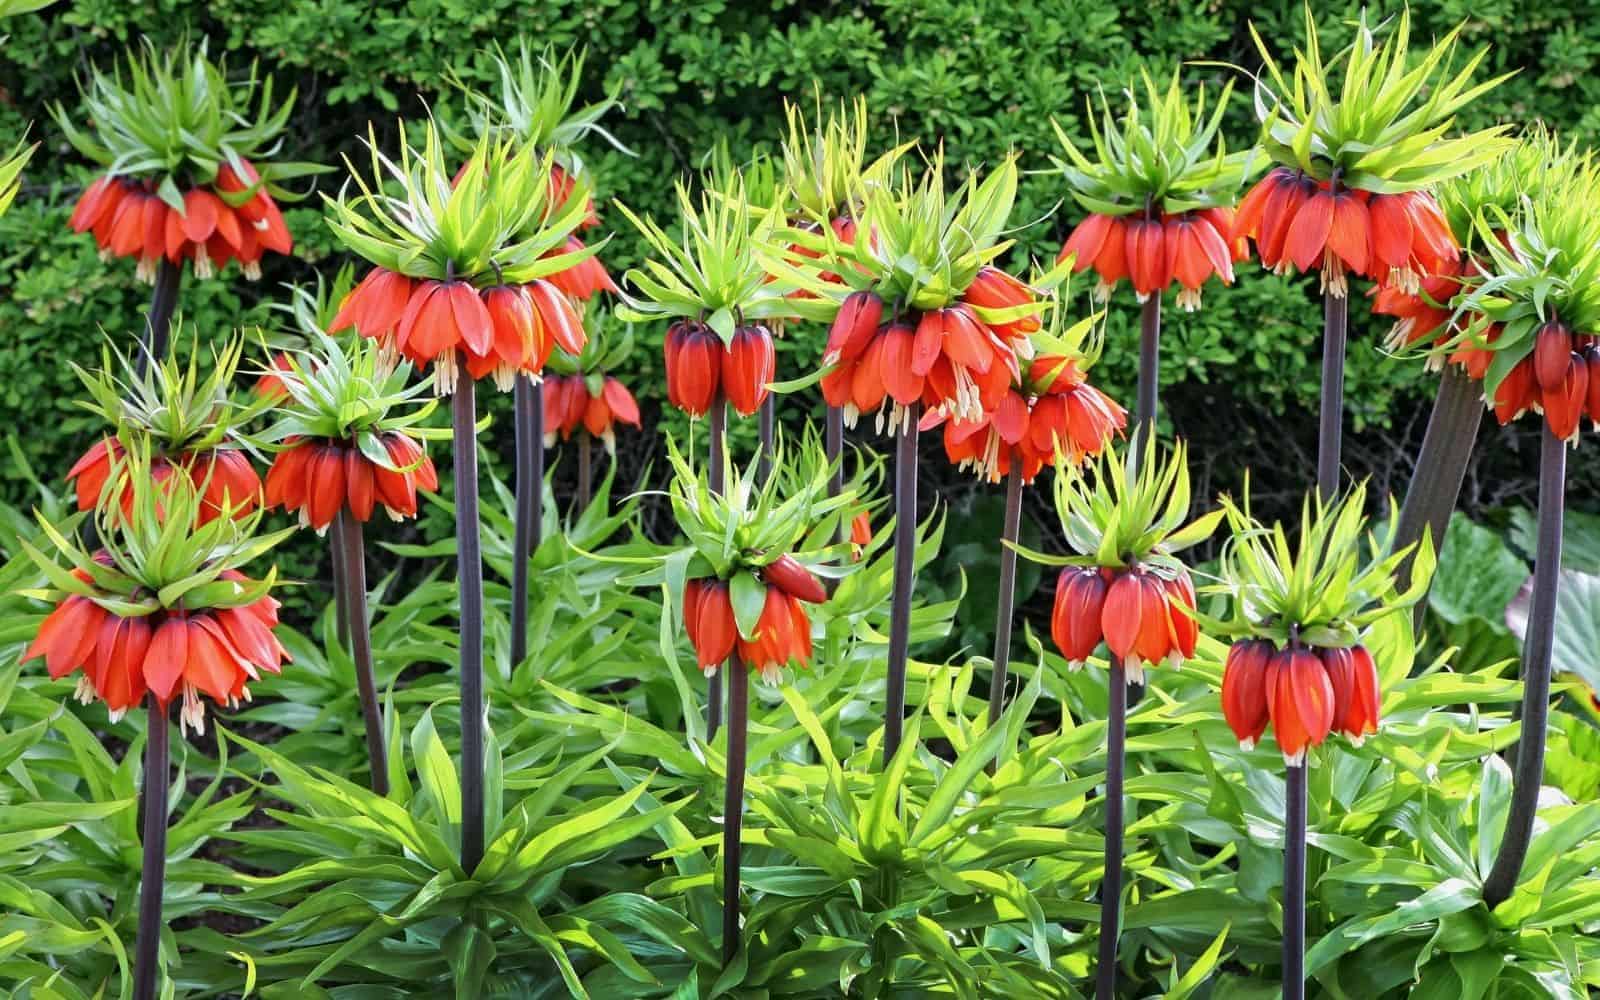 Fritillaria - orange crown imperial